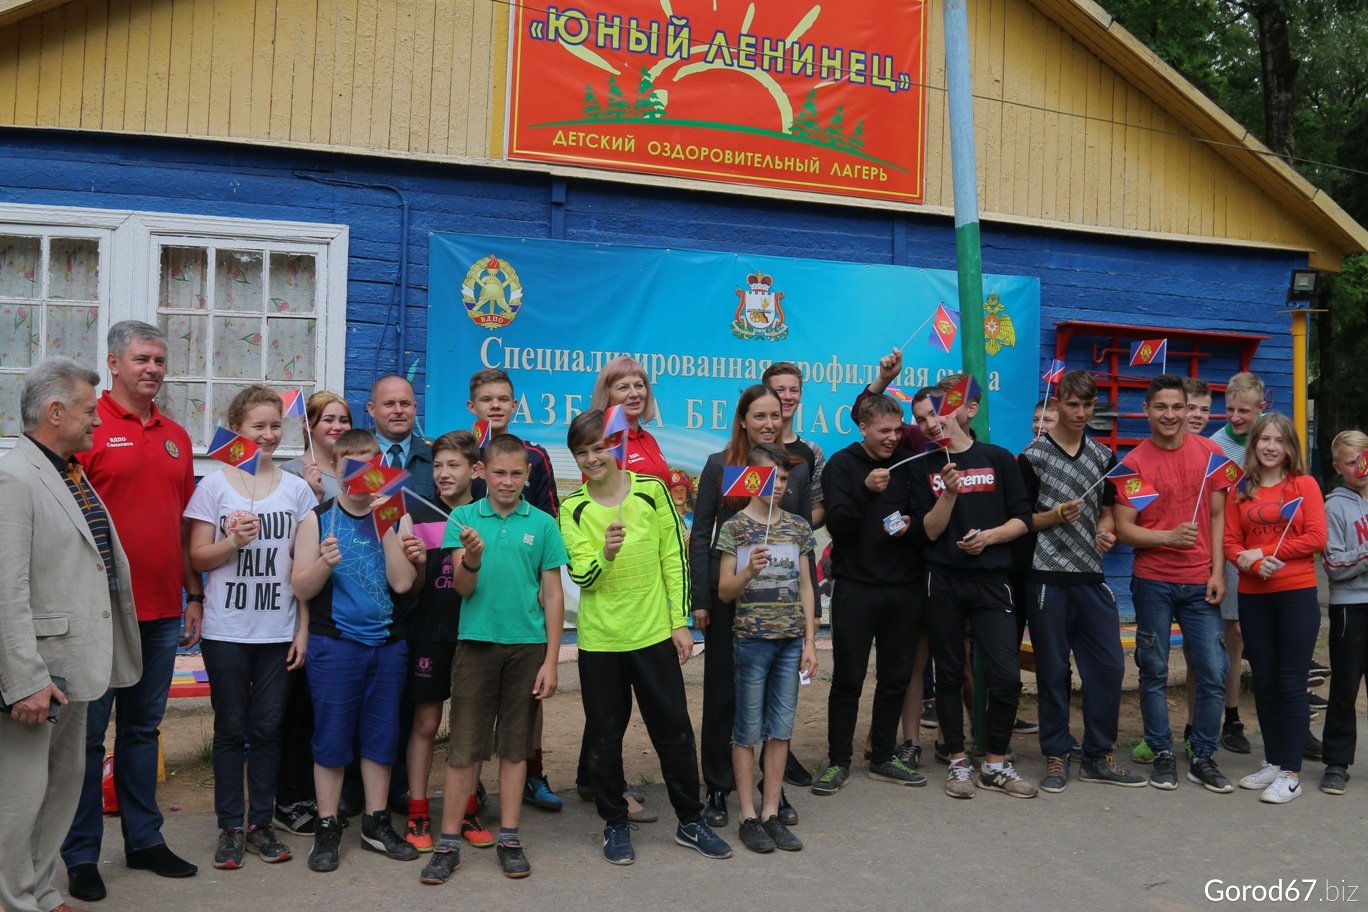 Юный ленинец – оздоровительный лагерь, Смоленск. Путевки в детский лагерь на 2023 год, фото 3